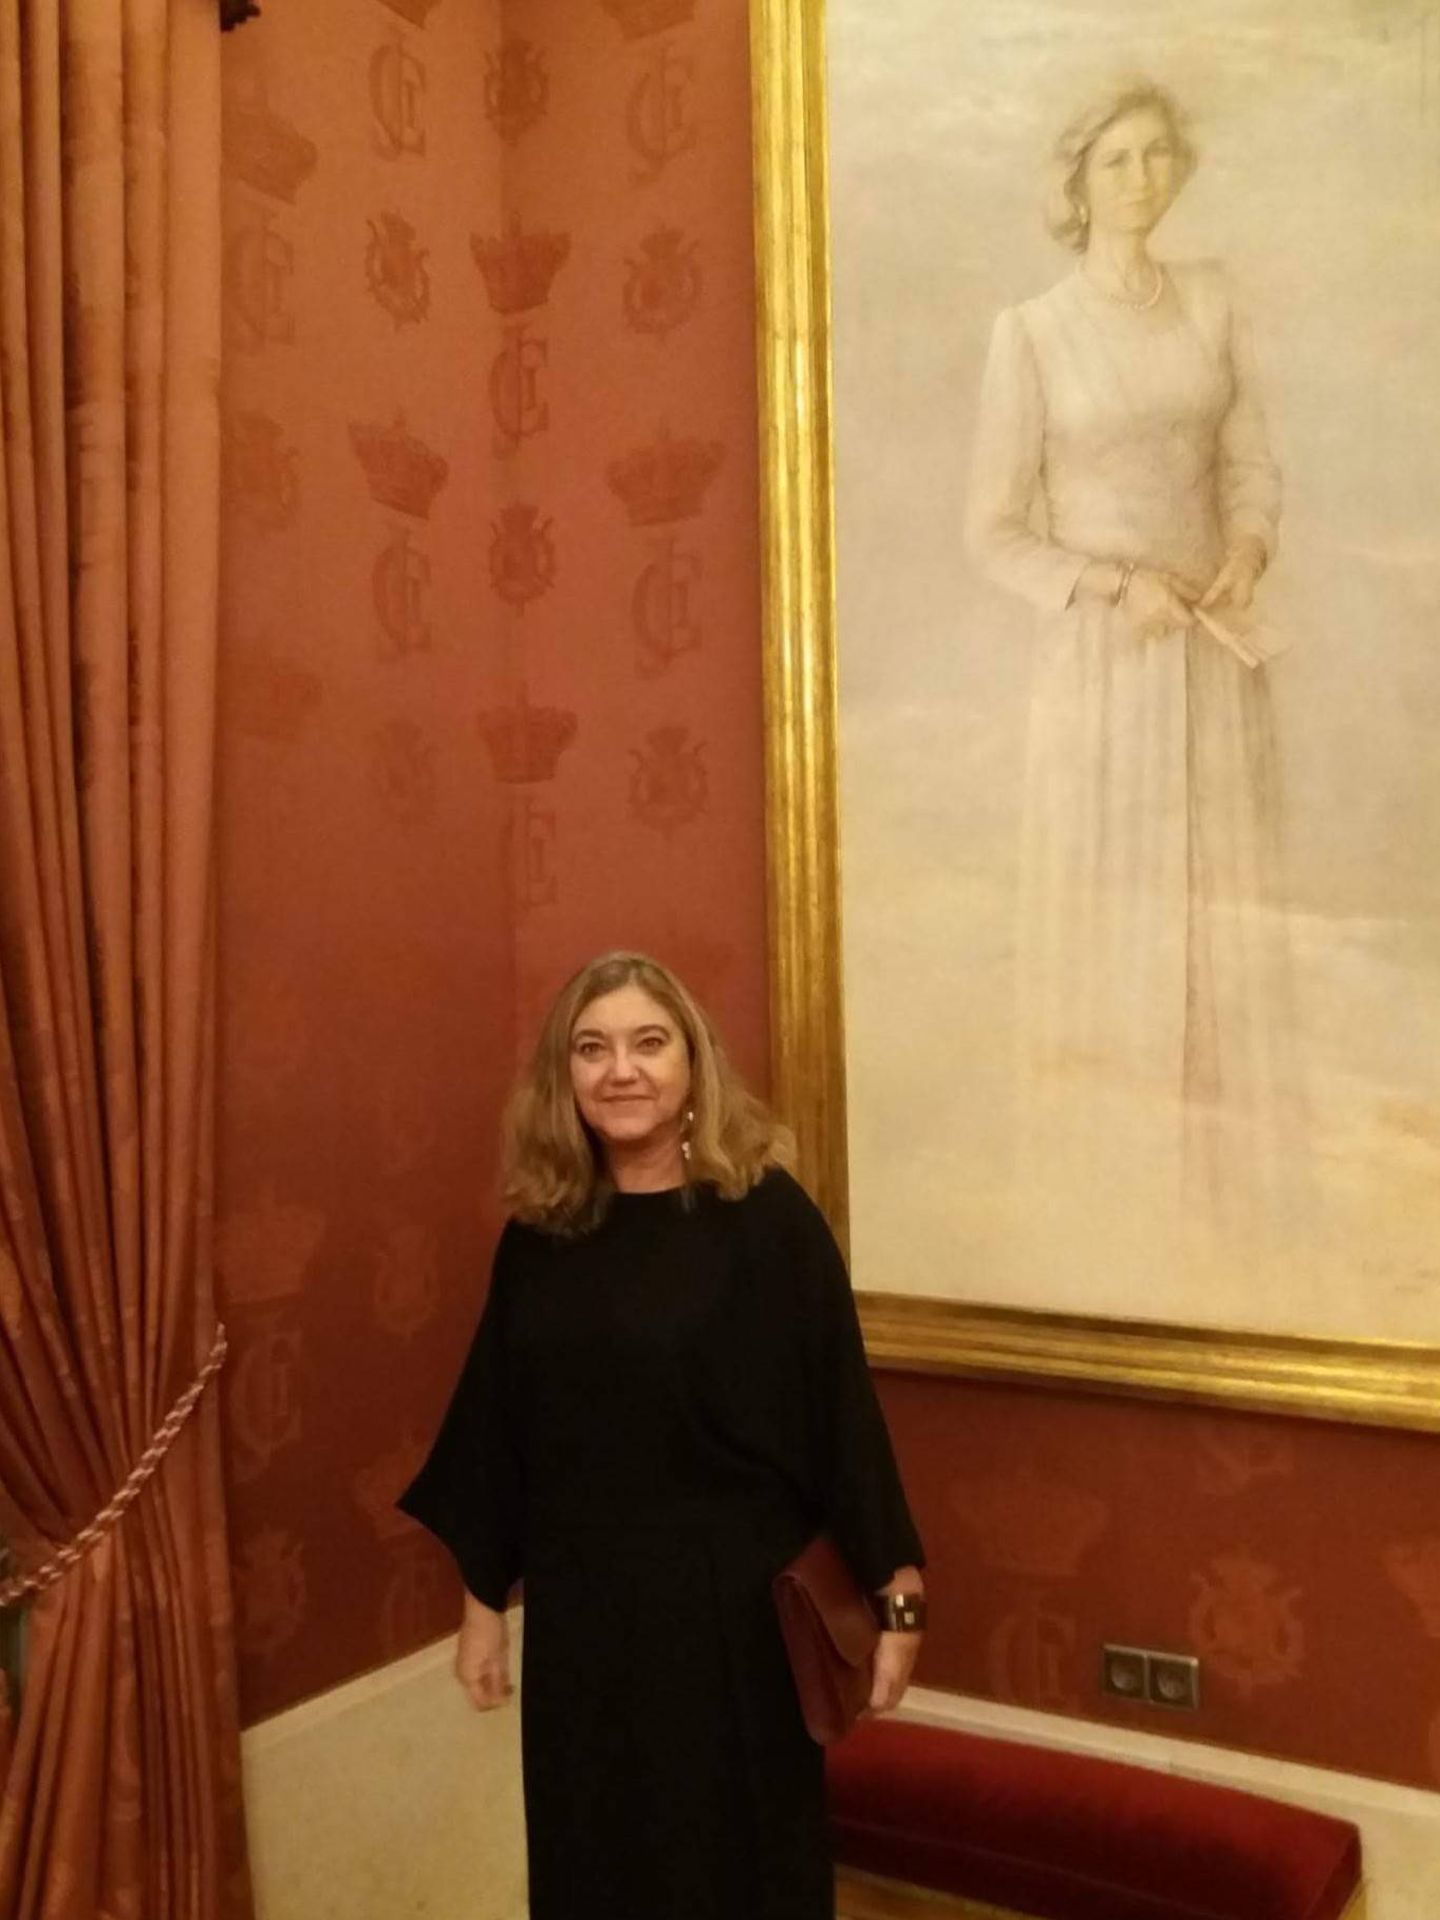 La autora, junto a un retrato de la reina Sofía. (Foto cedida)